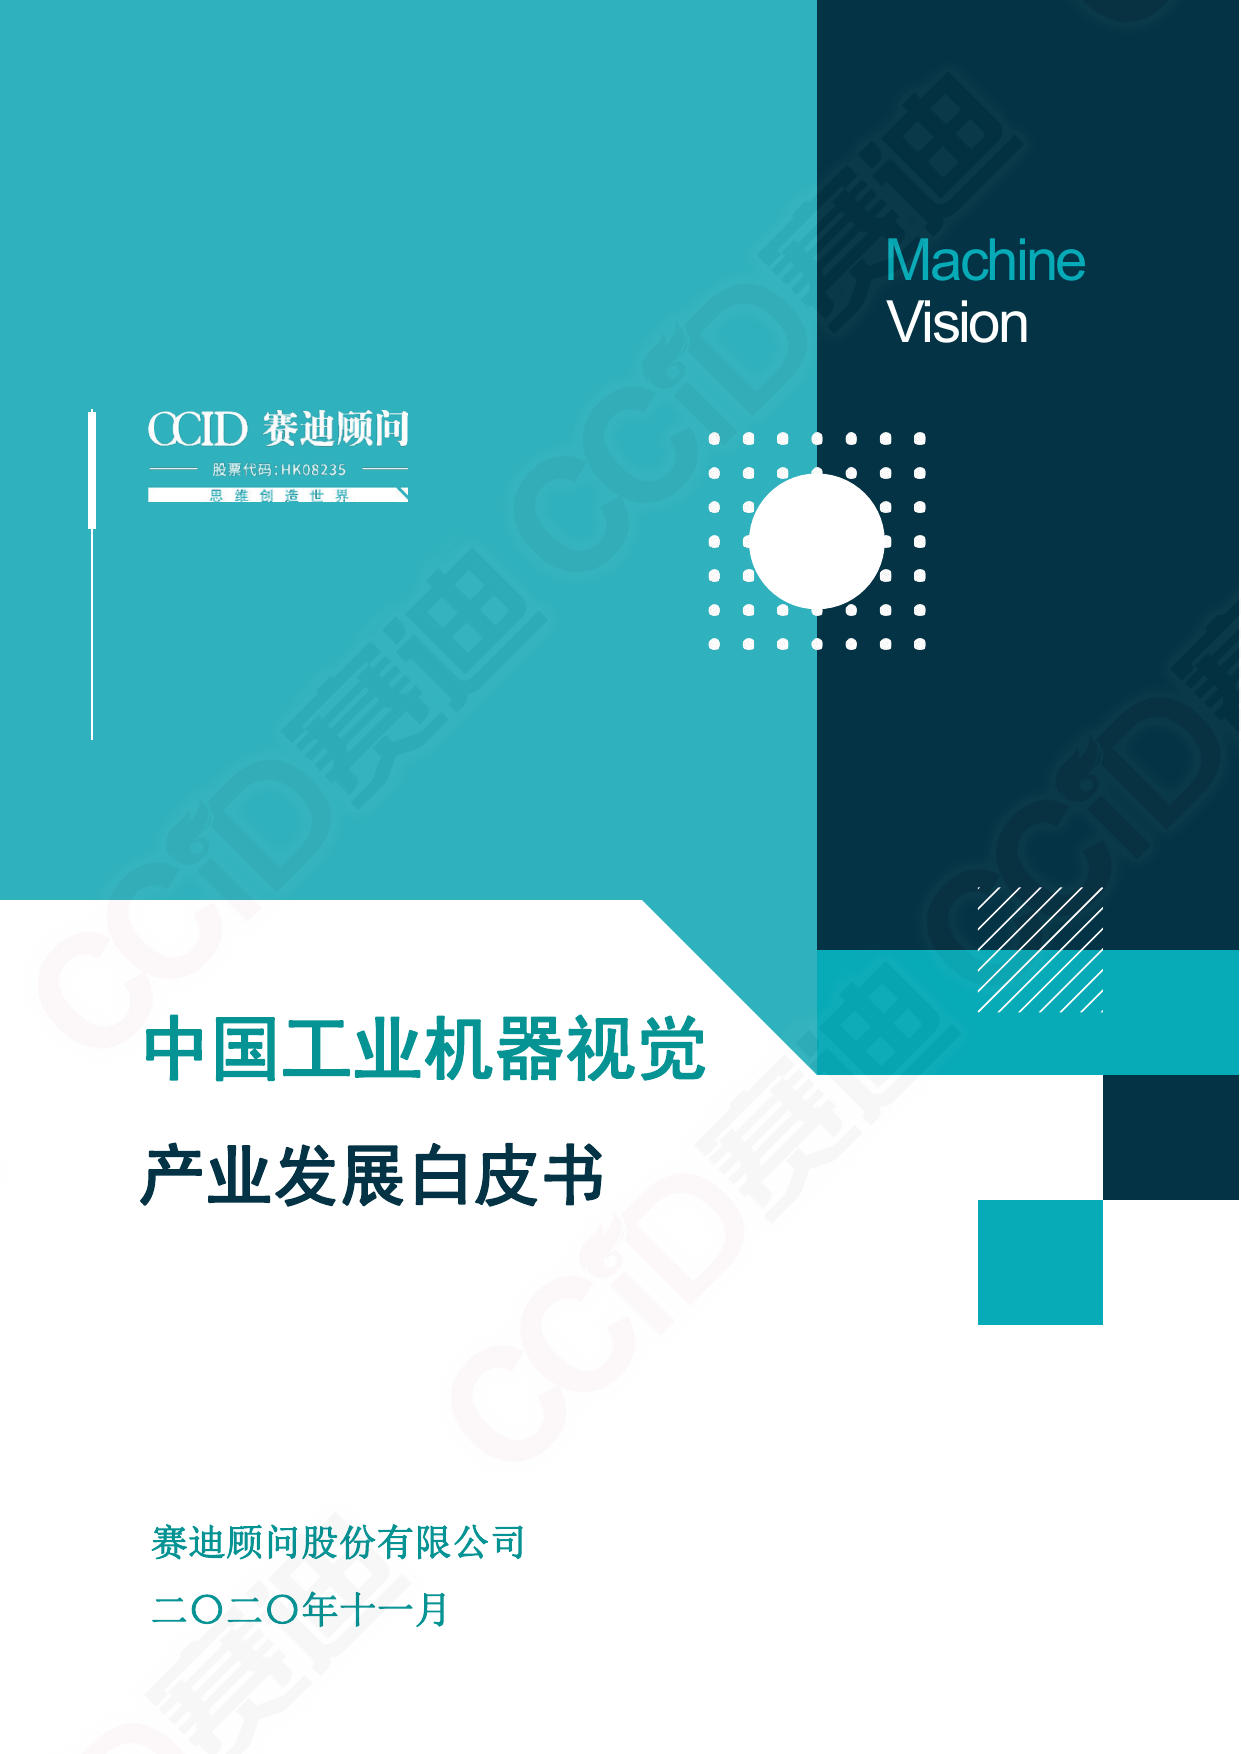 赛迪-中国工业机器视觉产业发展白皮书-2020.11-31页